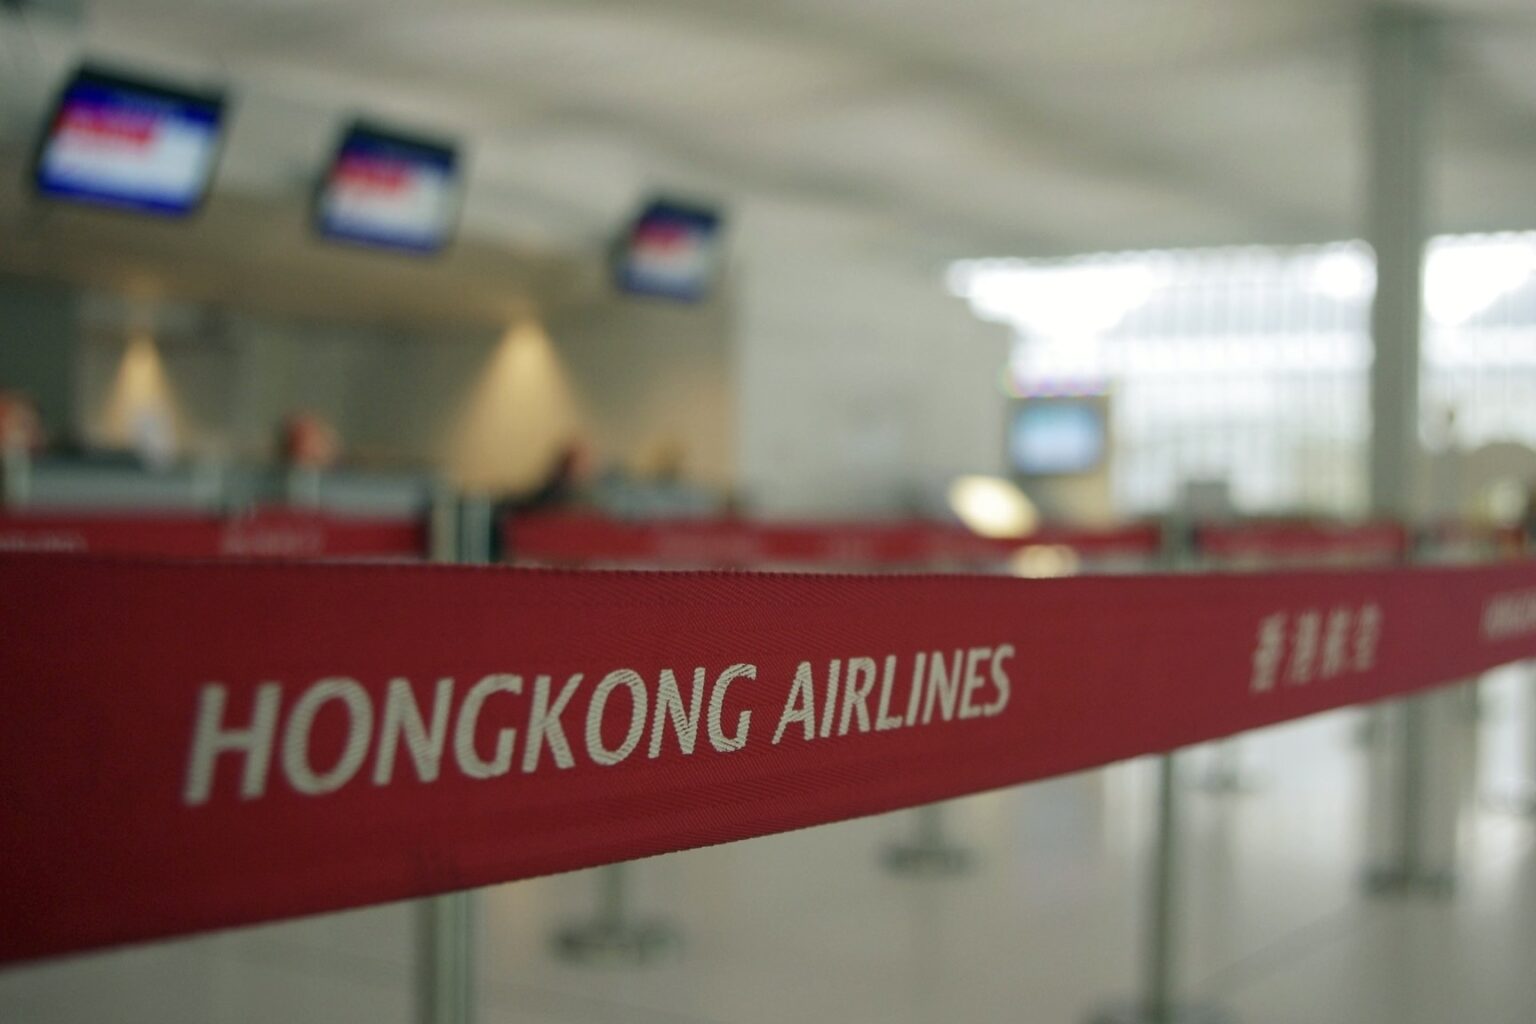 The Hong Kong Airlines check-in counters at Hong Kong International Airport.